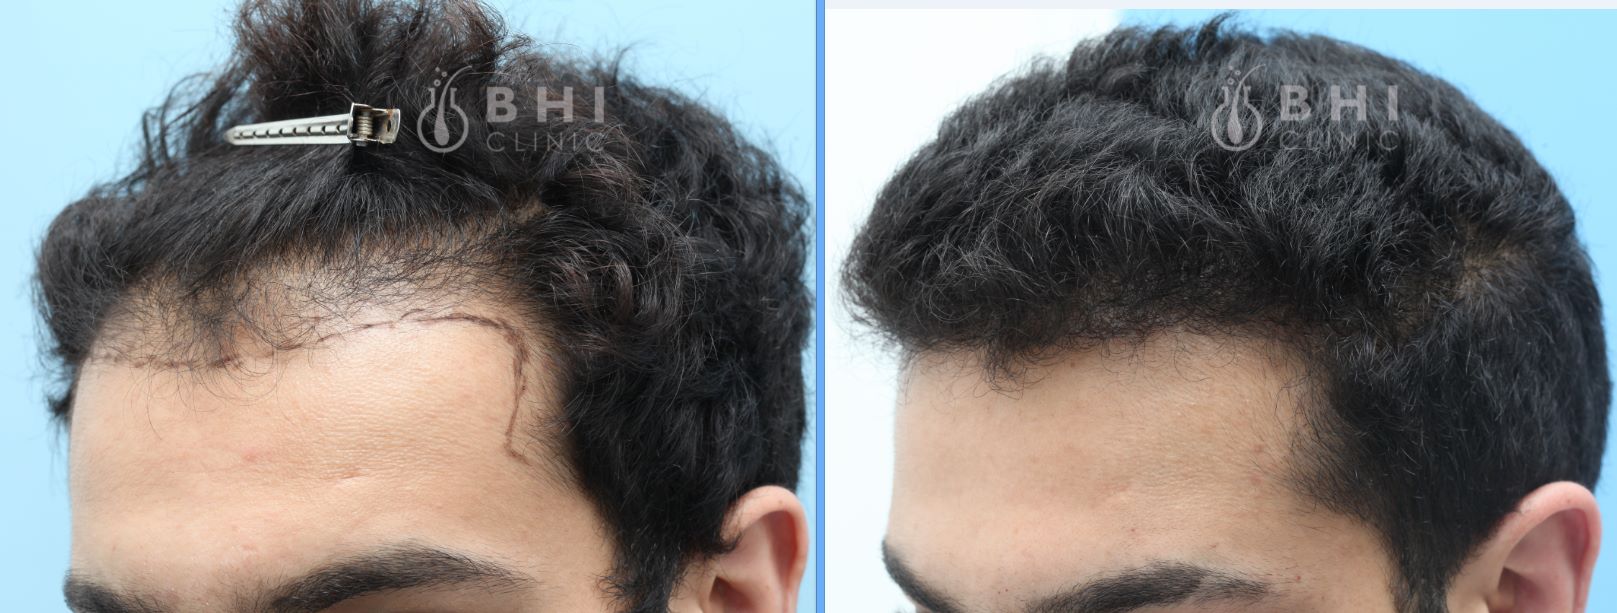 Cấy tóc FUE 1790 nang, kết quả 6 tháng sau cấy - case 57